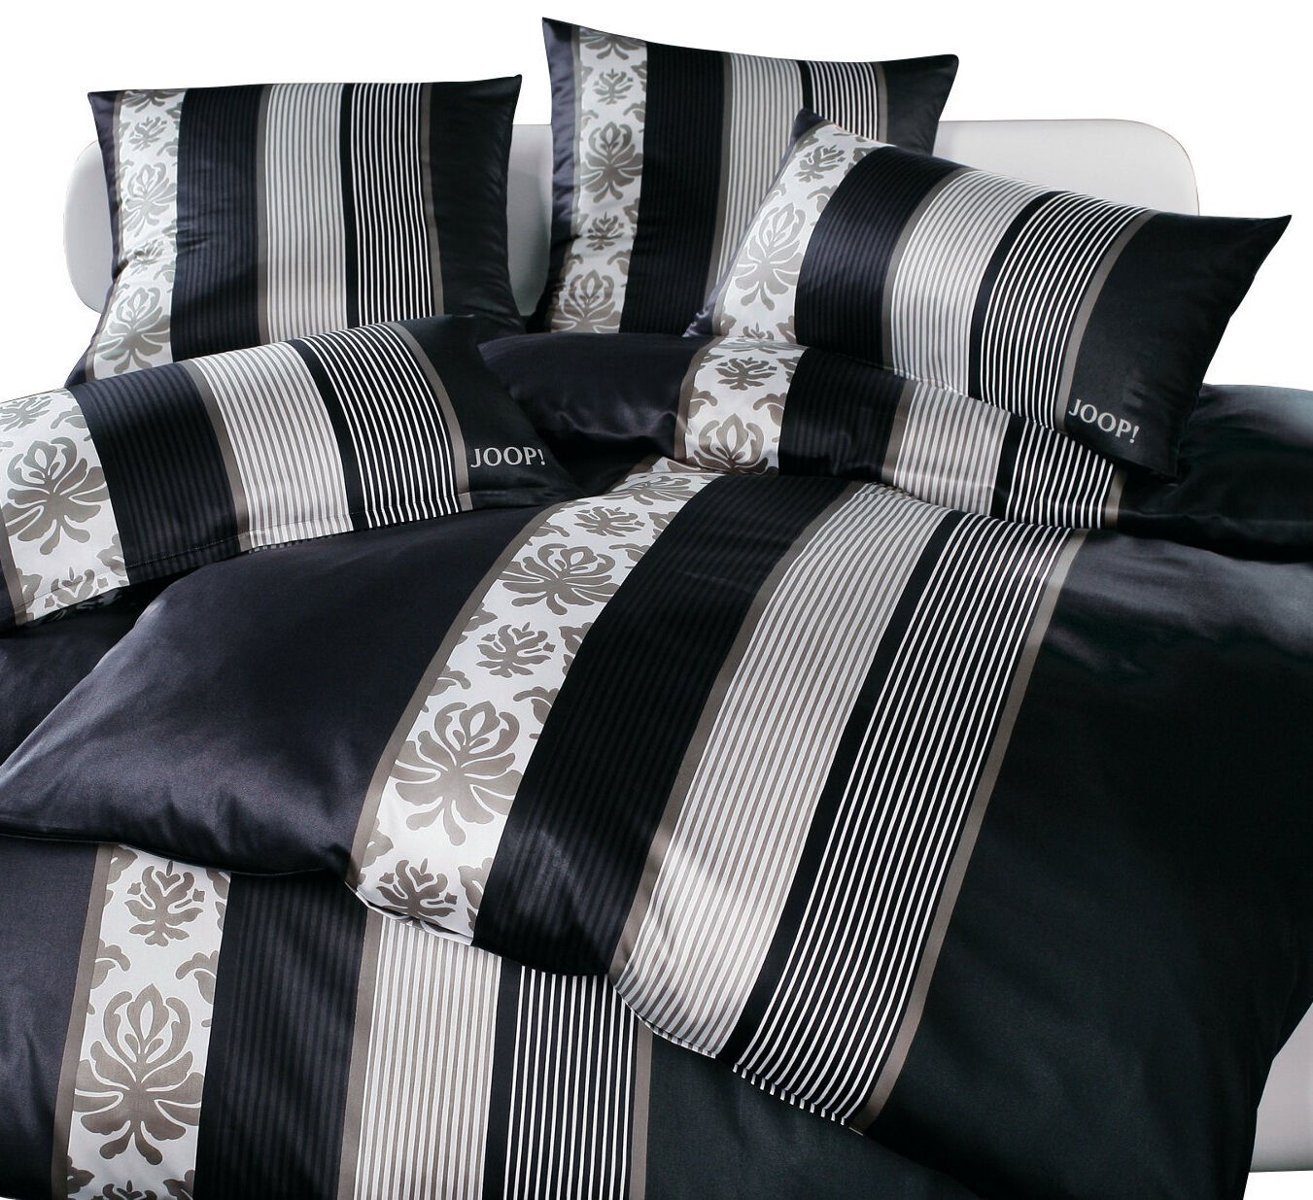 Bettwäsche »JOOP! Mako Satin Bettwäsche Ornament Stripes 4022/9 schwarz  155x220«, Joop!, Mit Reißverschluss online kaufen | OTTO